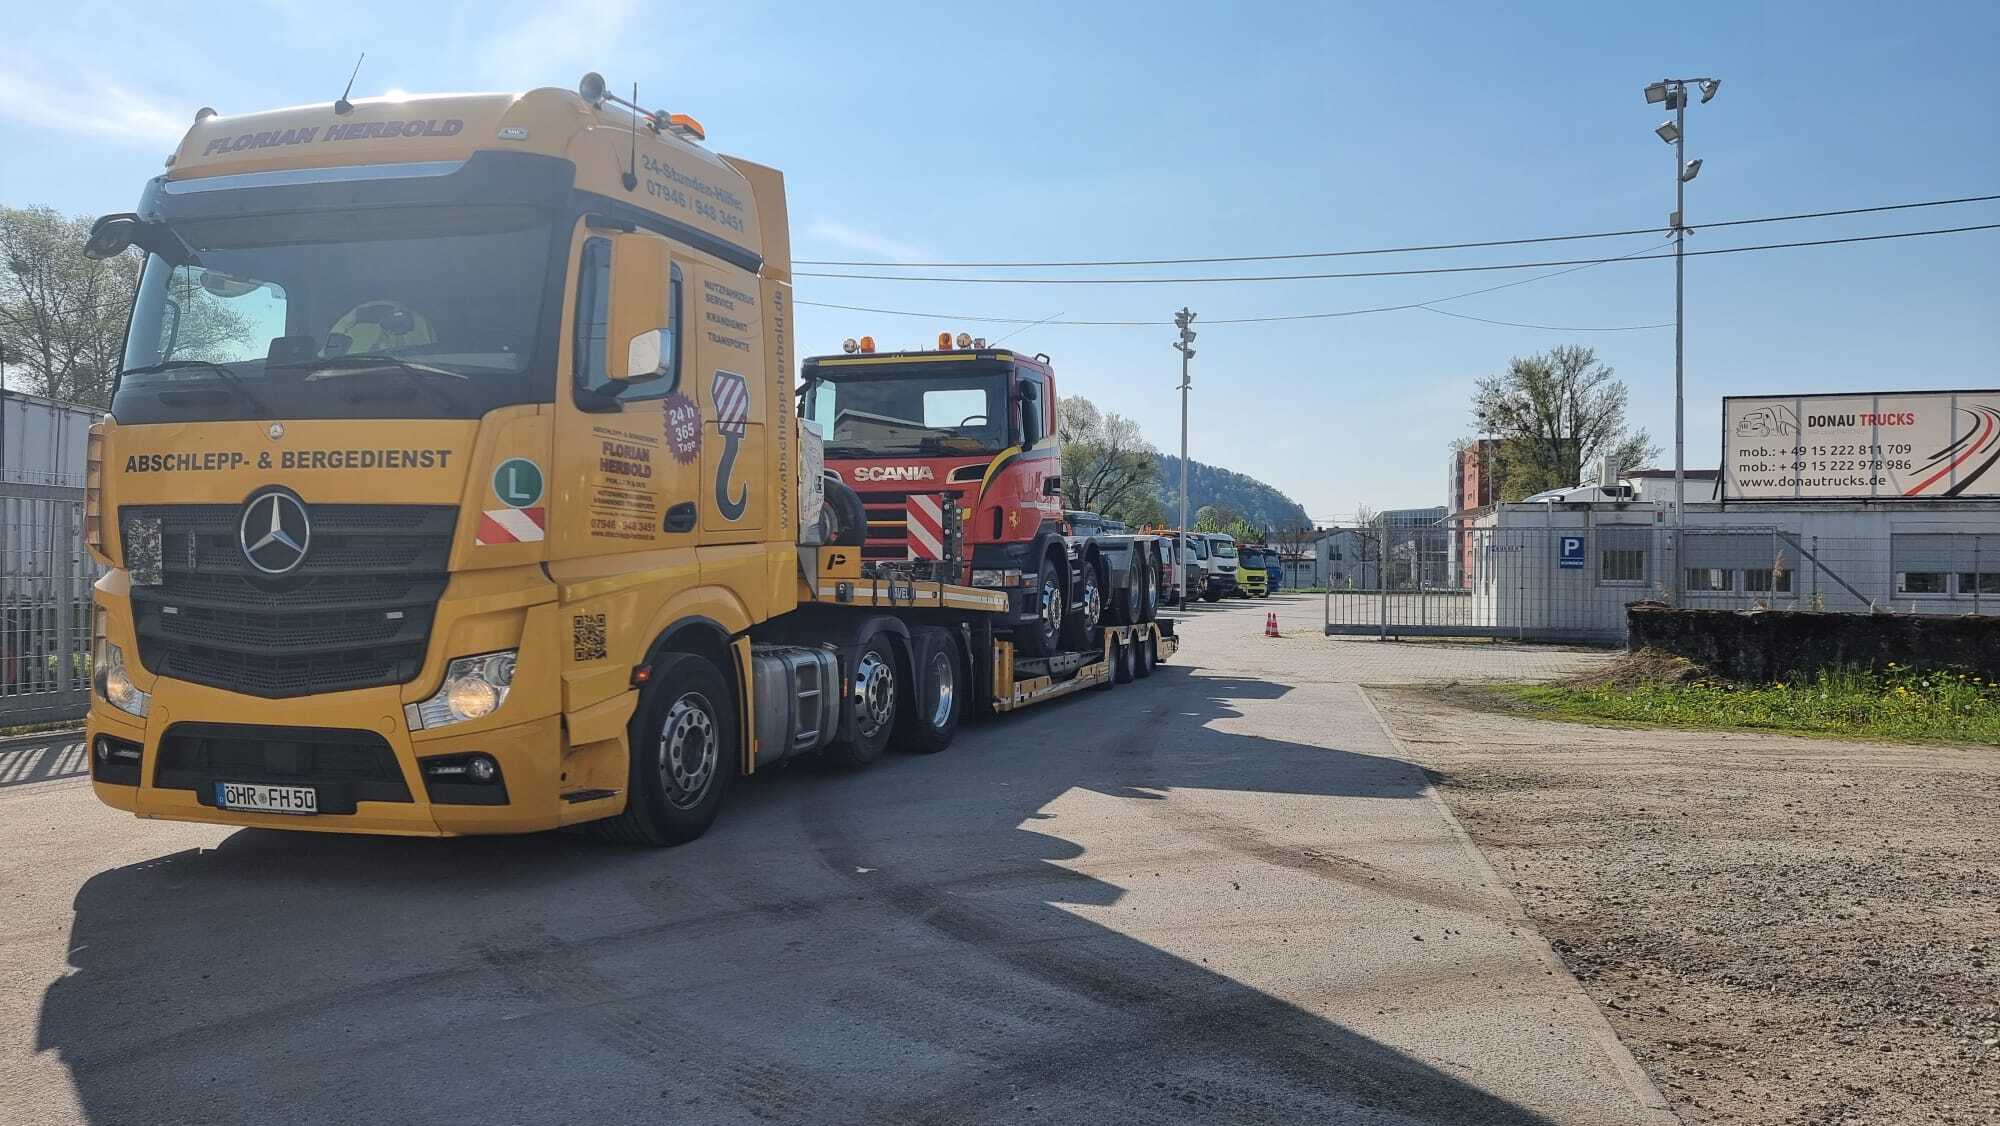 Donau Trucks GmbH undefined: φωτογραφία 4